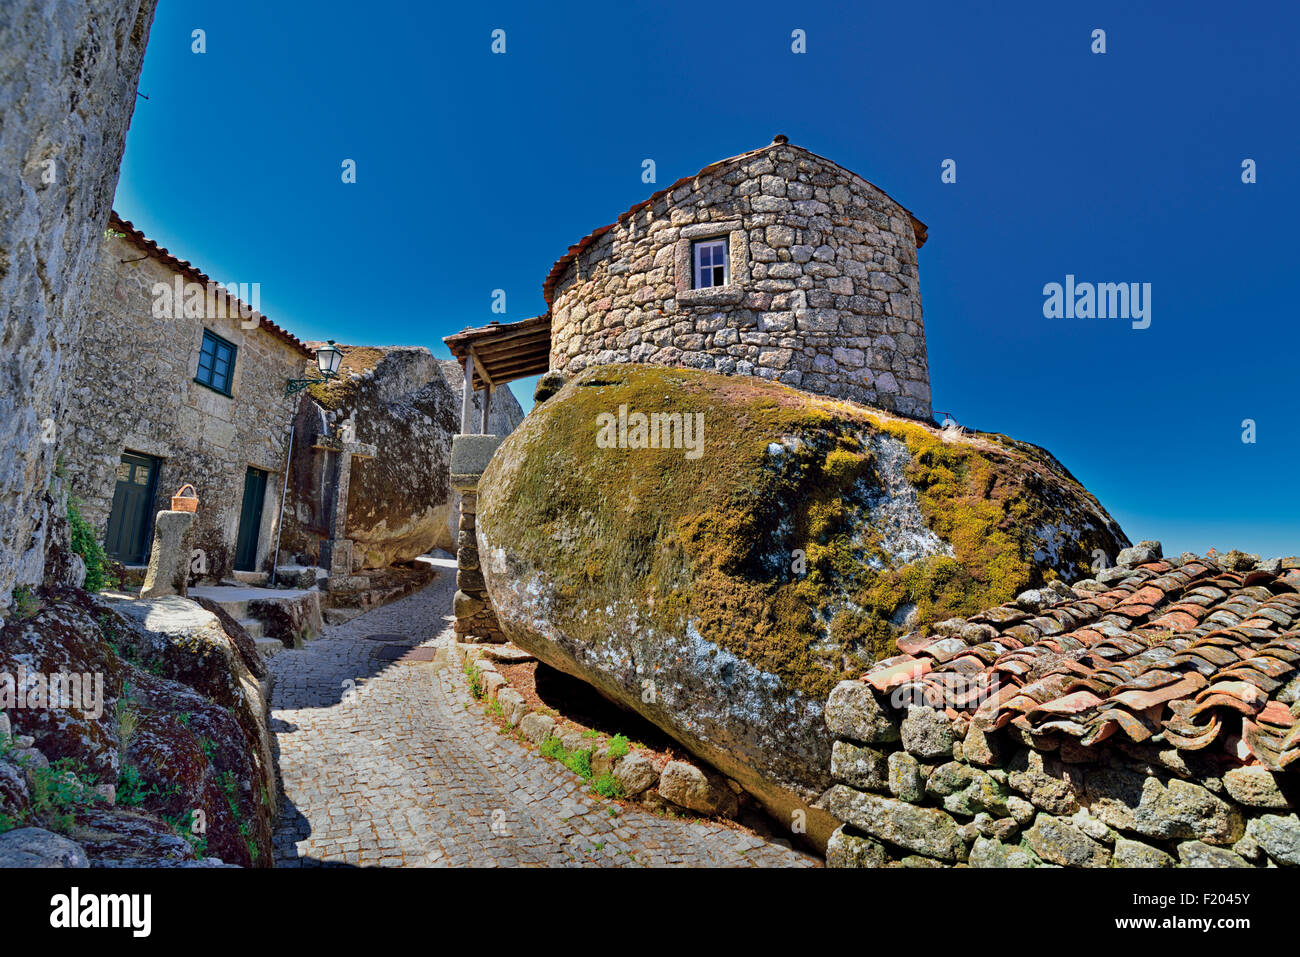 Portugal: Mittelalterliche steinerne Gasse und Häuser im historischen Dorf Mosanto Stockfoto